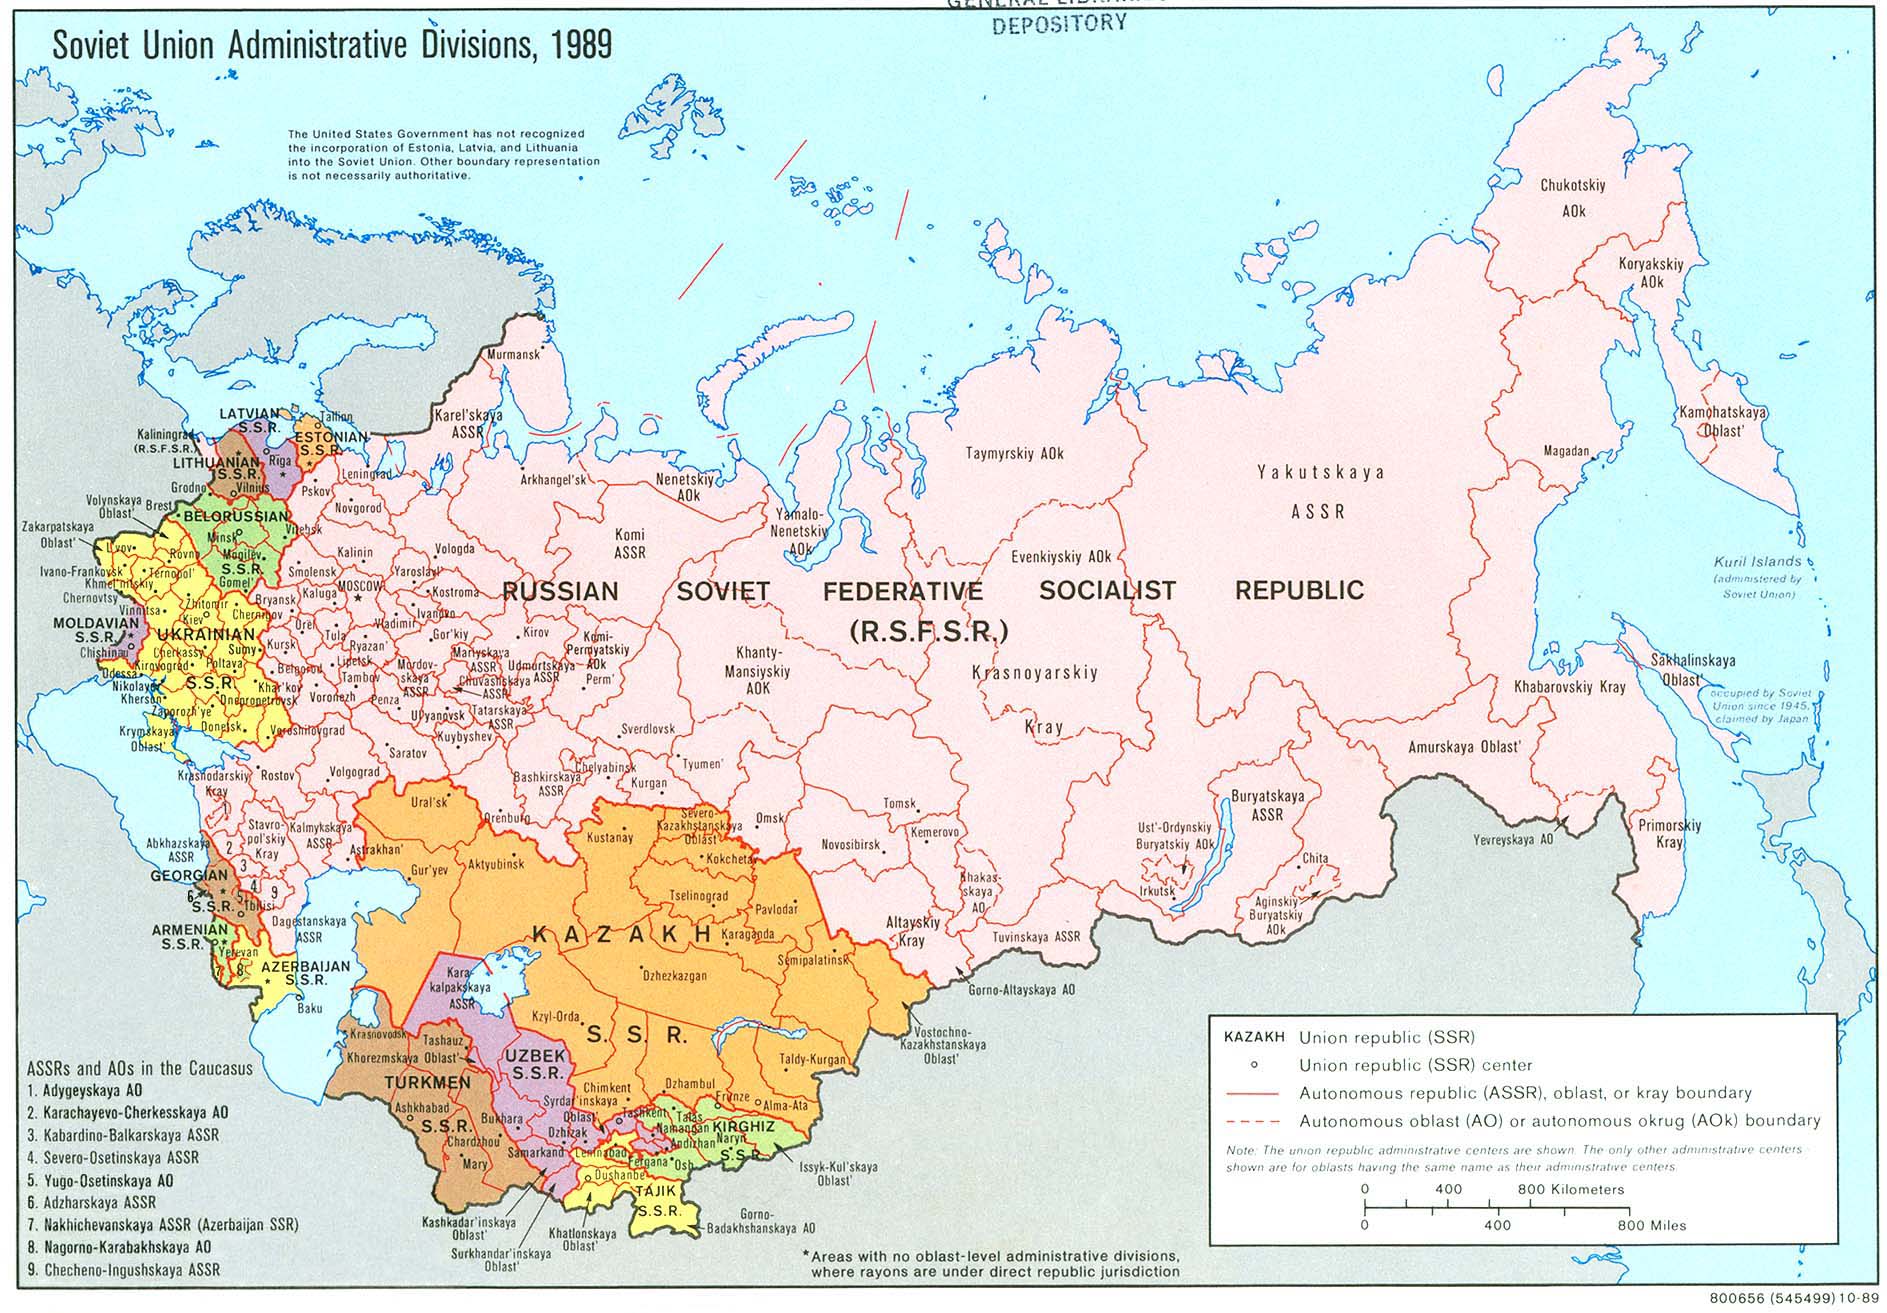 Sovjetunionens administrativa indelning år 1989